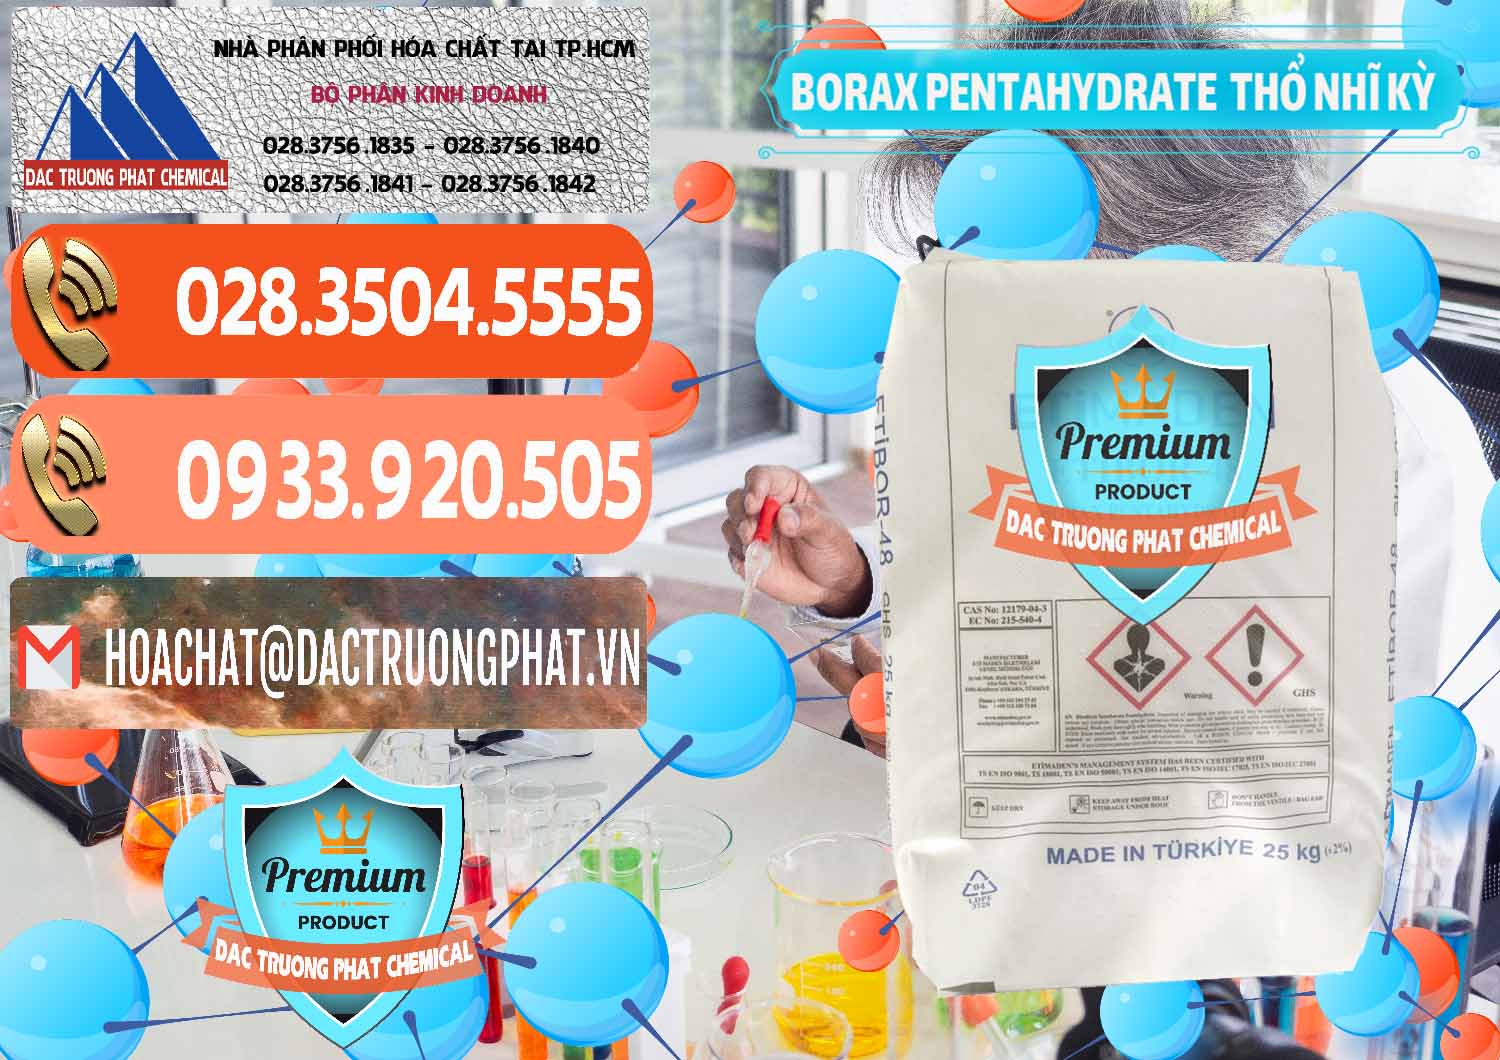 Cty chuyên nhập khẩu & bán Borax Pentahydrate Thổ Nhĩ Kỳ Turkey - 0431 - Công ty chuyên phân phối _ bán hóa chất tại TP.HCM - hoachatmientay.com